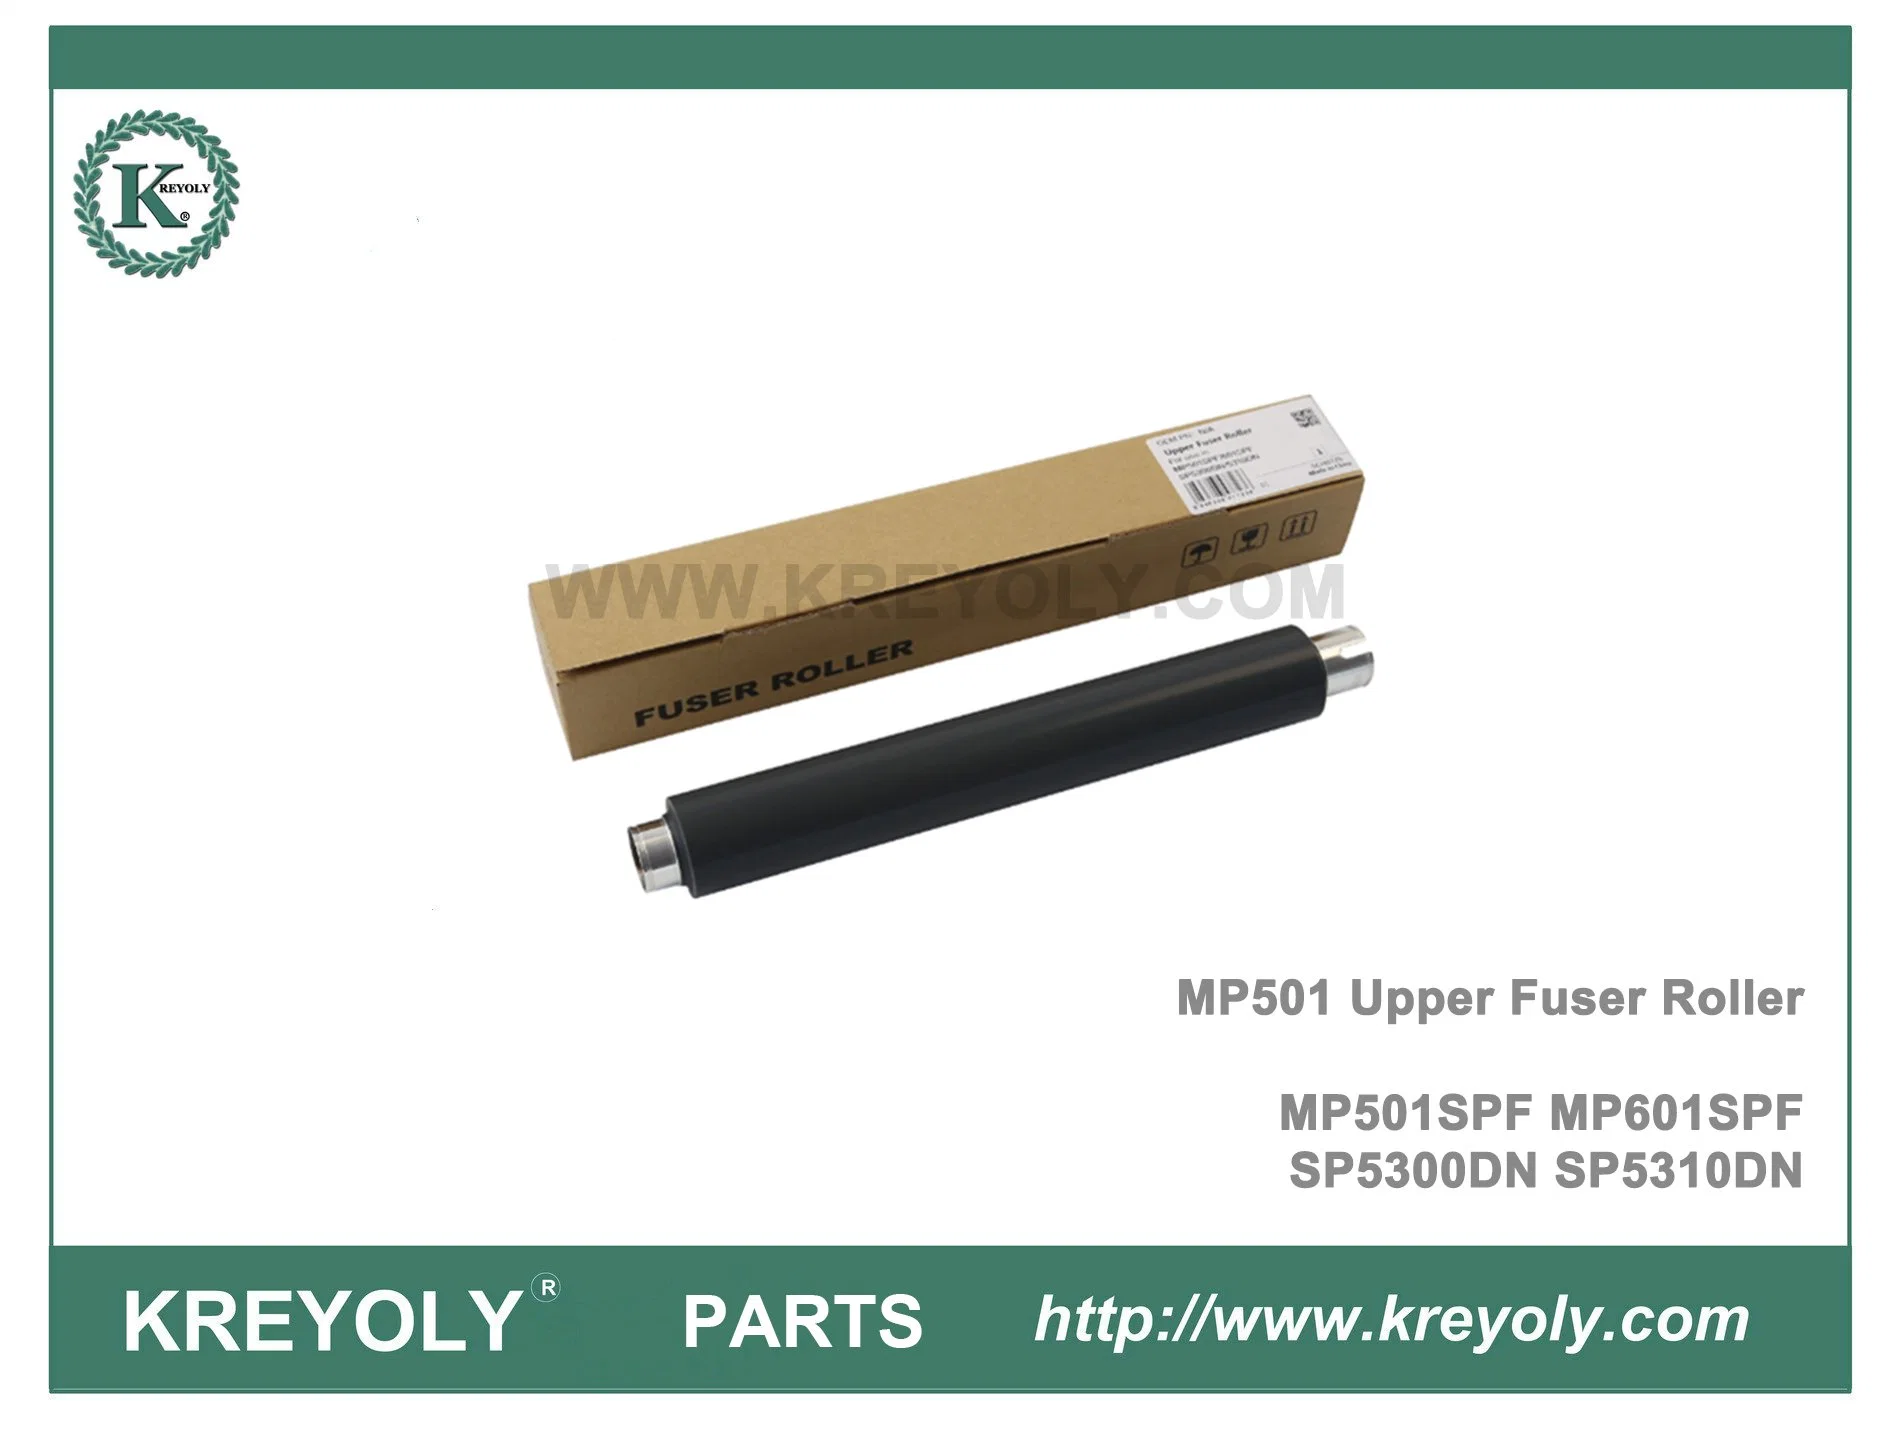 MP601SPF SP5300DN SP5310DN MP501SPF rodillo superior del fusor